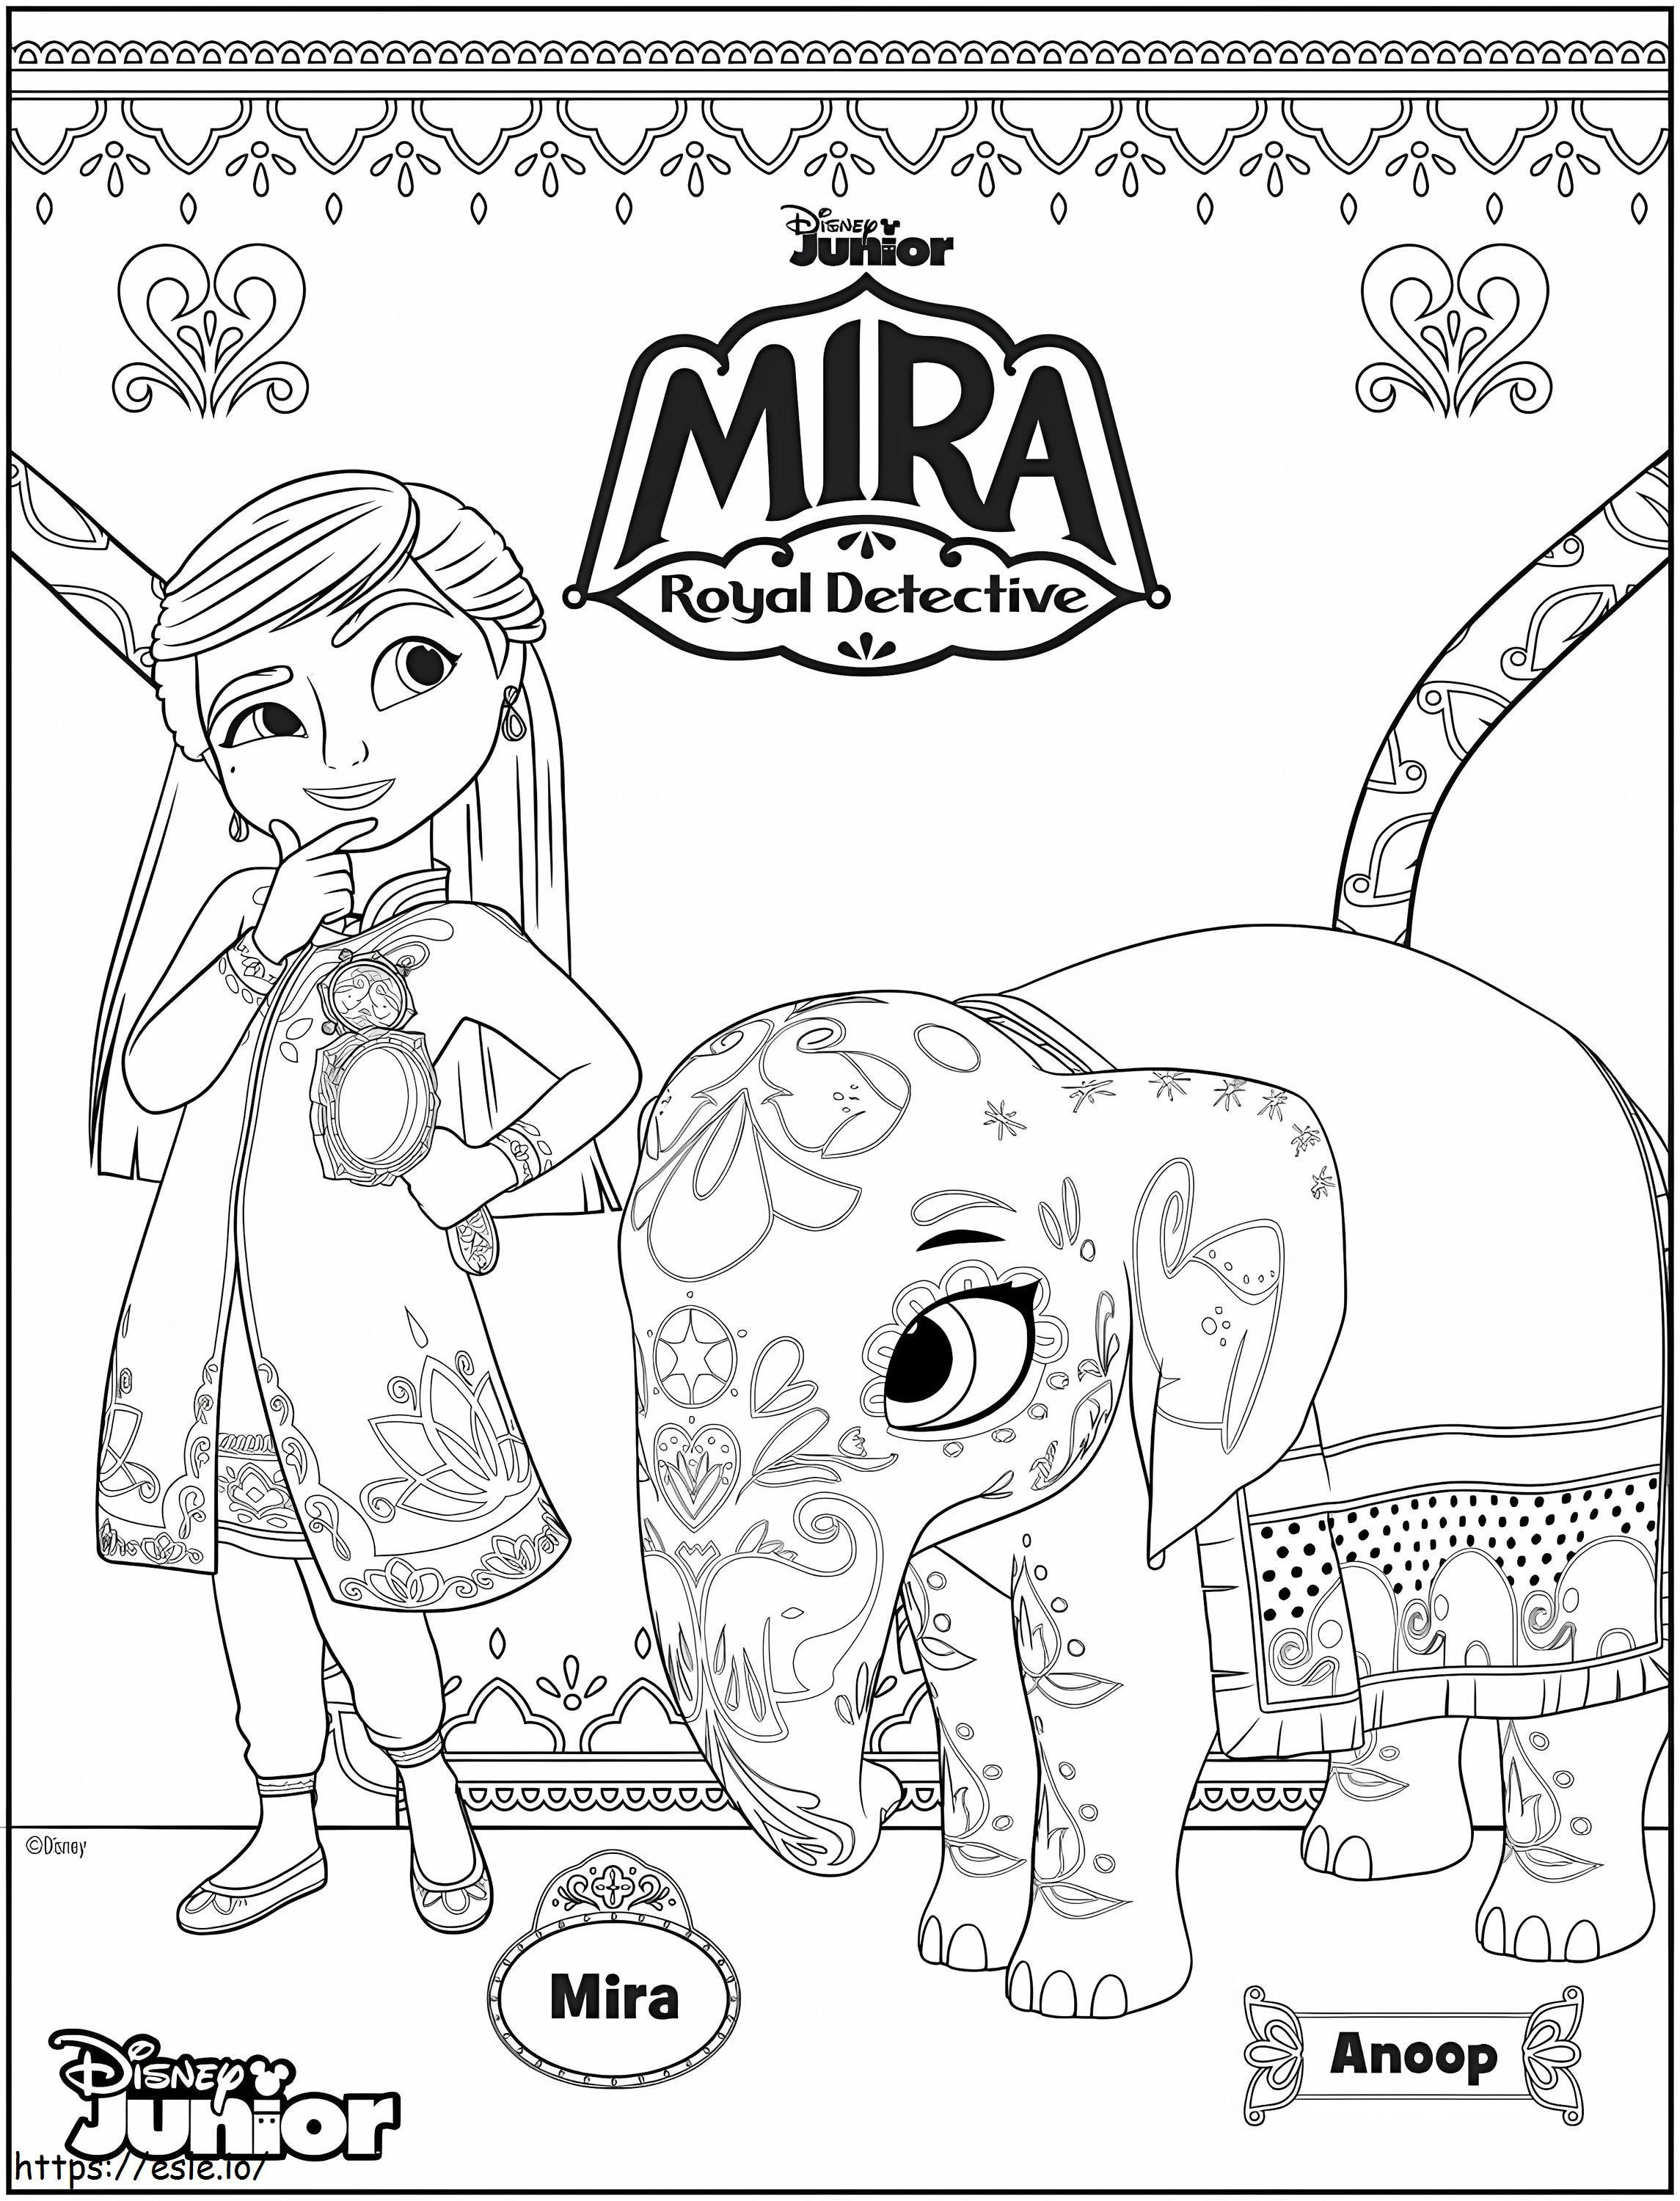 Mira i Anoop z „Mira Royal Detective”. kolorowanka